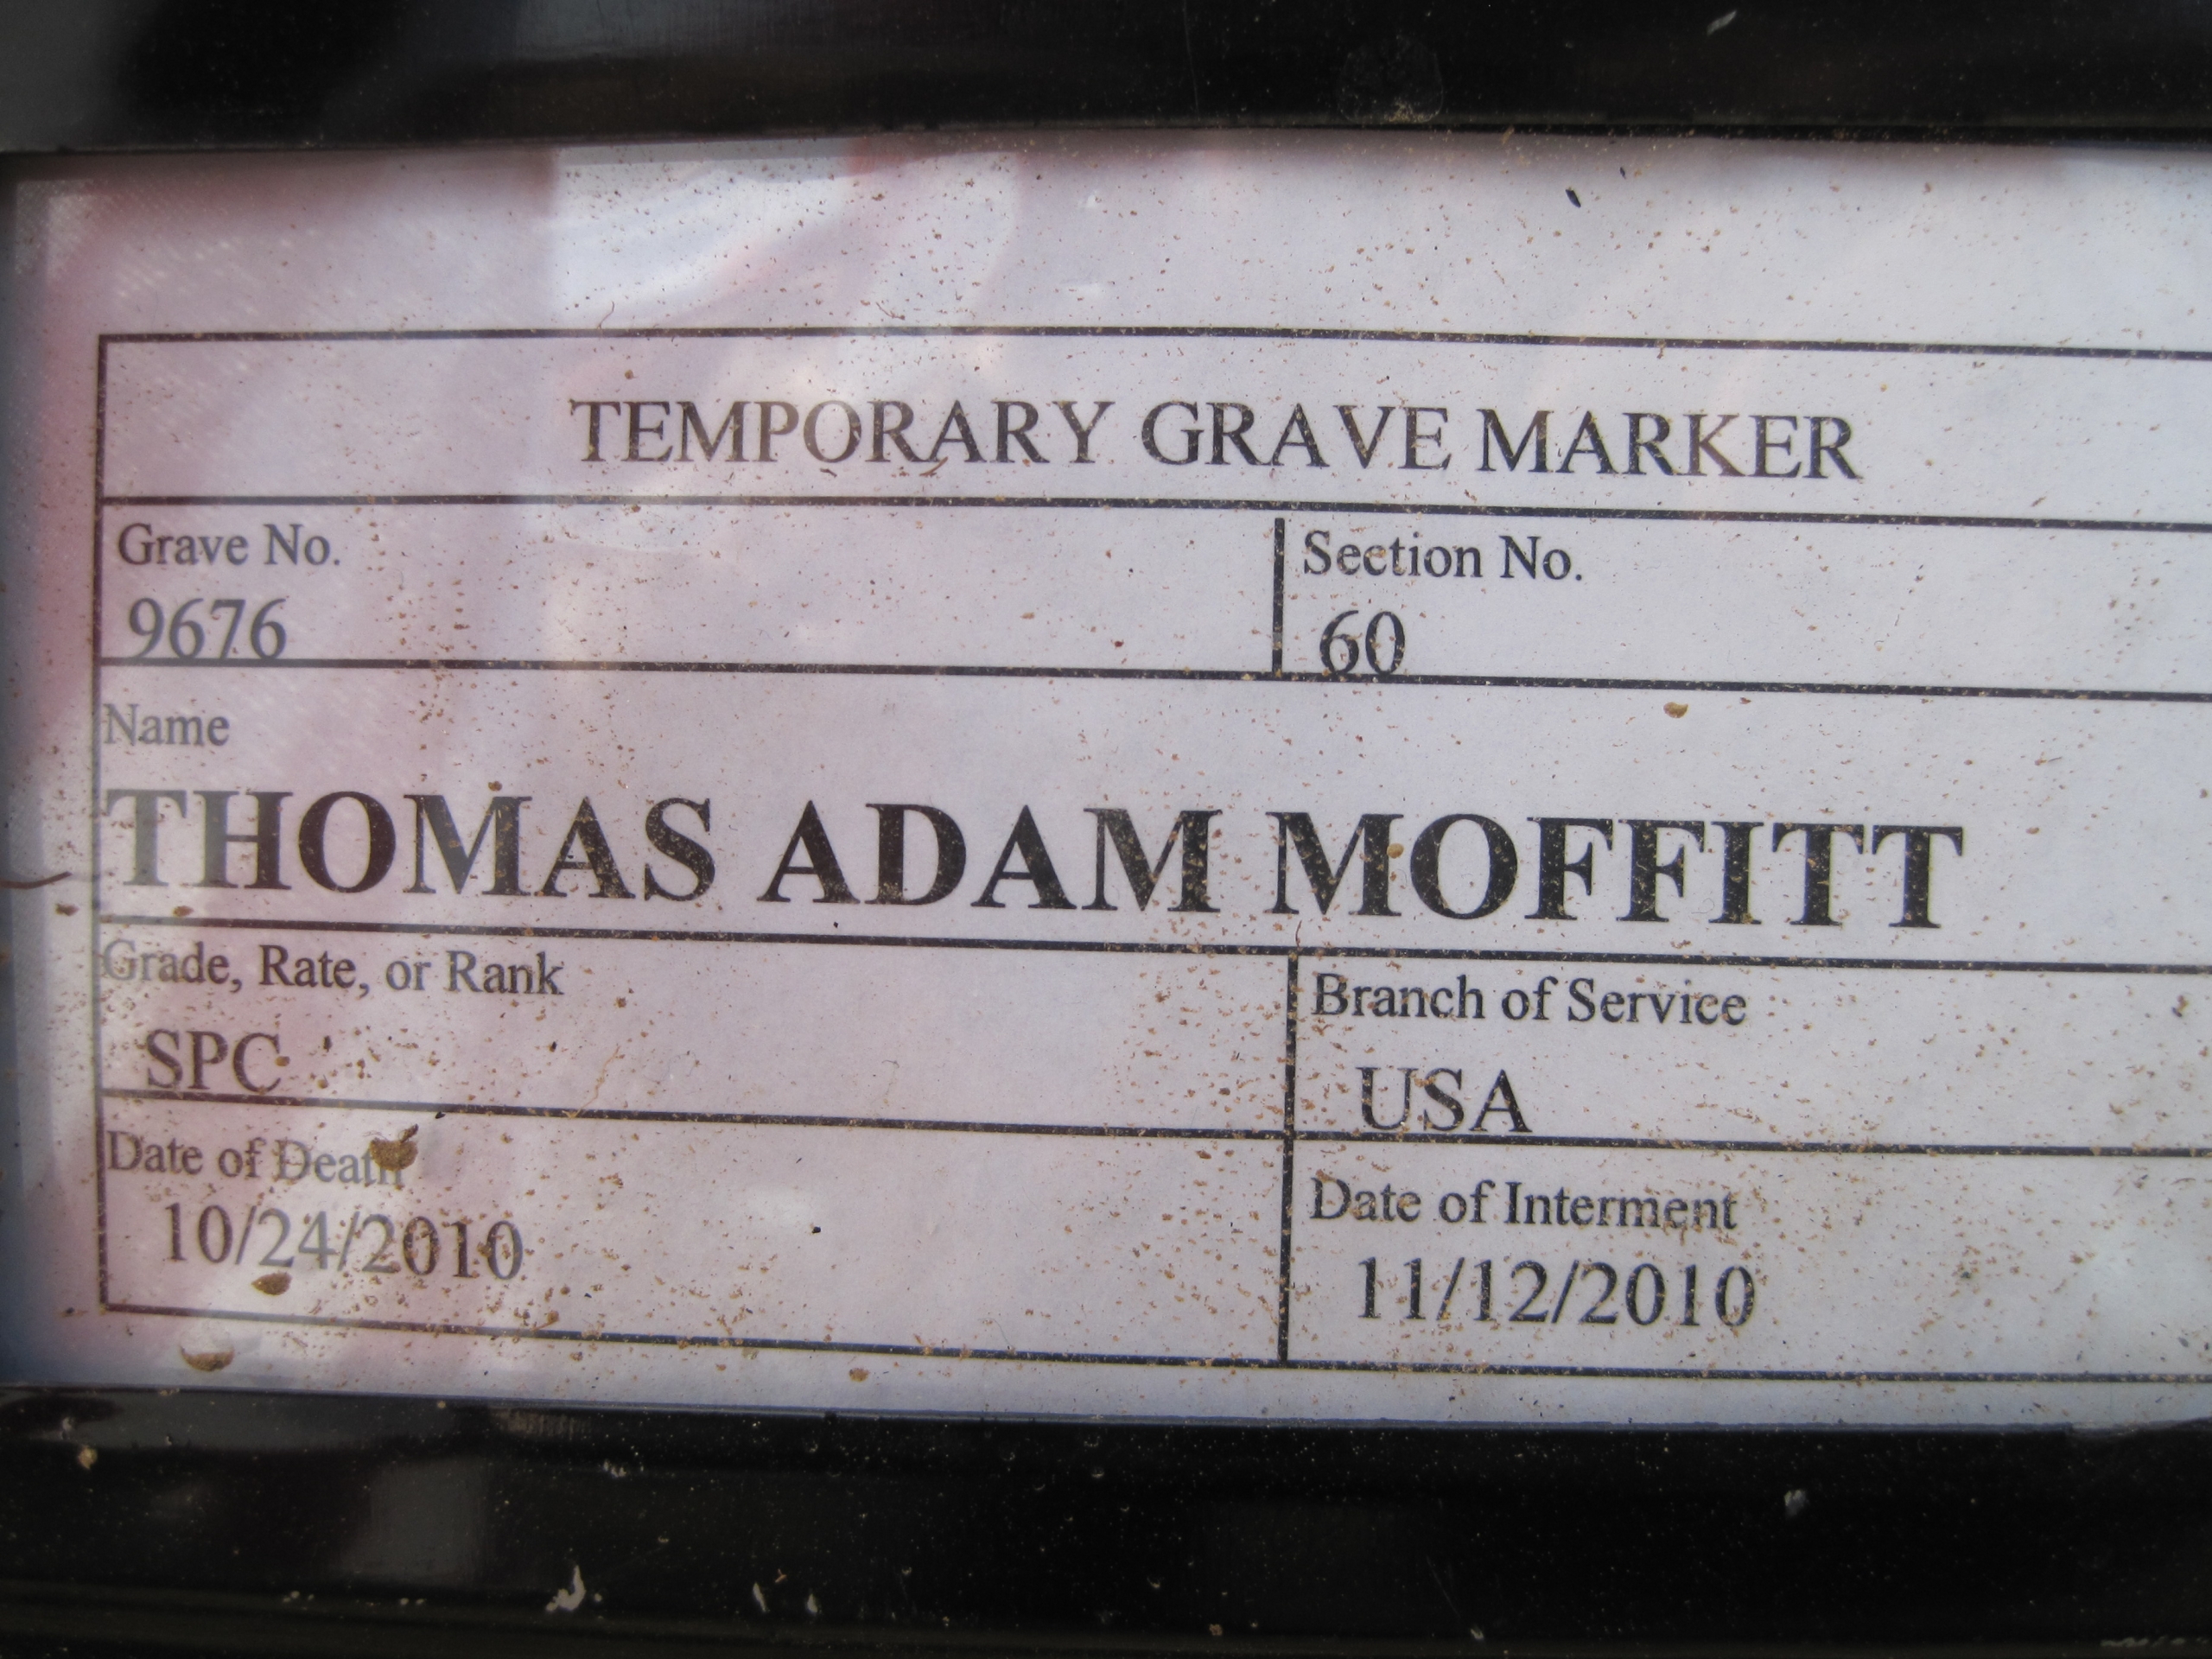 tamoffitt-gravesite-photo-by-eileen-horan-november-2010-002